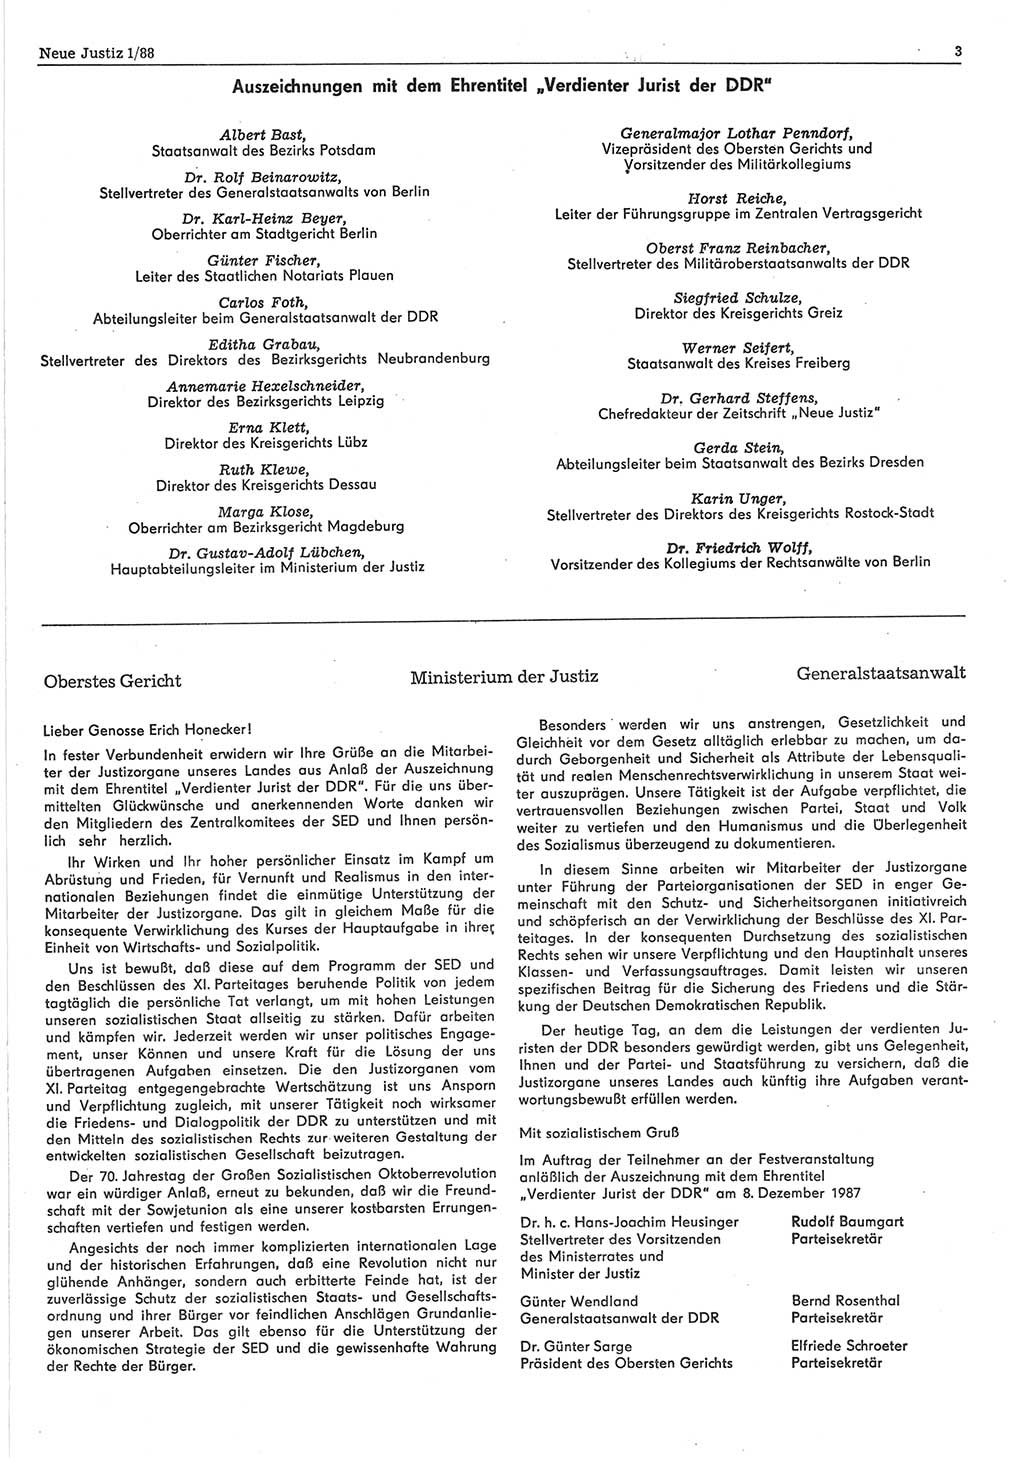 Neue Justiz (NJ), Zeitschrift für sozialistisches Recht und Gesetzlichkeit [Deutsche Demokratische Republik (DDR)], 42. Jahrgang 1988, Seite 3 (NJ DDR 1988, S. 3)